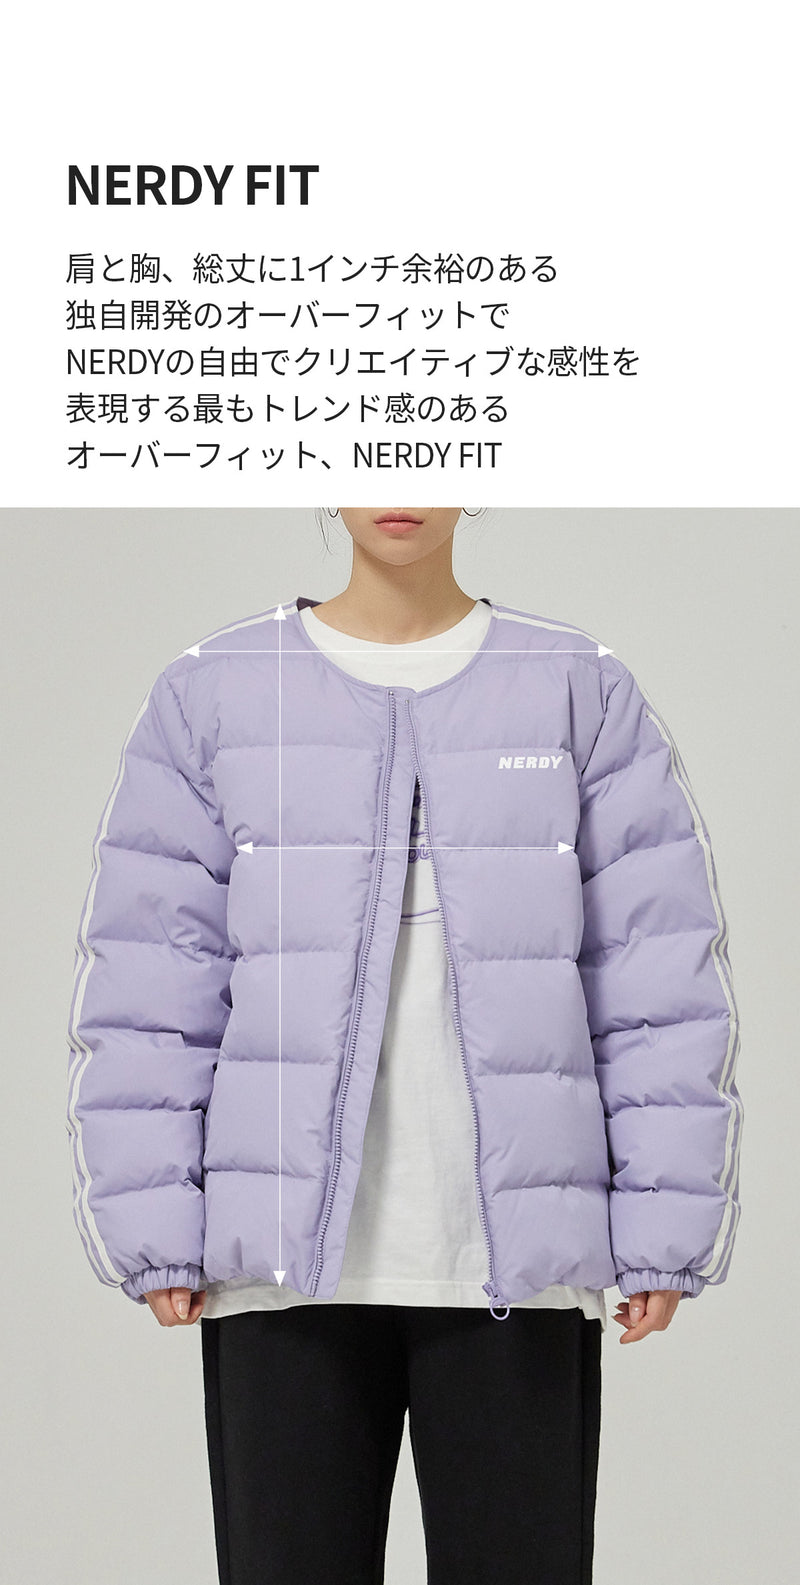 NY ライト ダウン ジャケットライトパープル / NY Light Down Jacket Light Purple - whoisnerdy jp